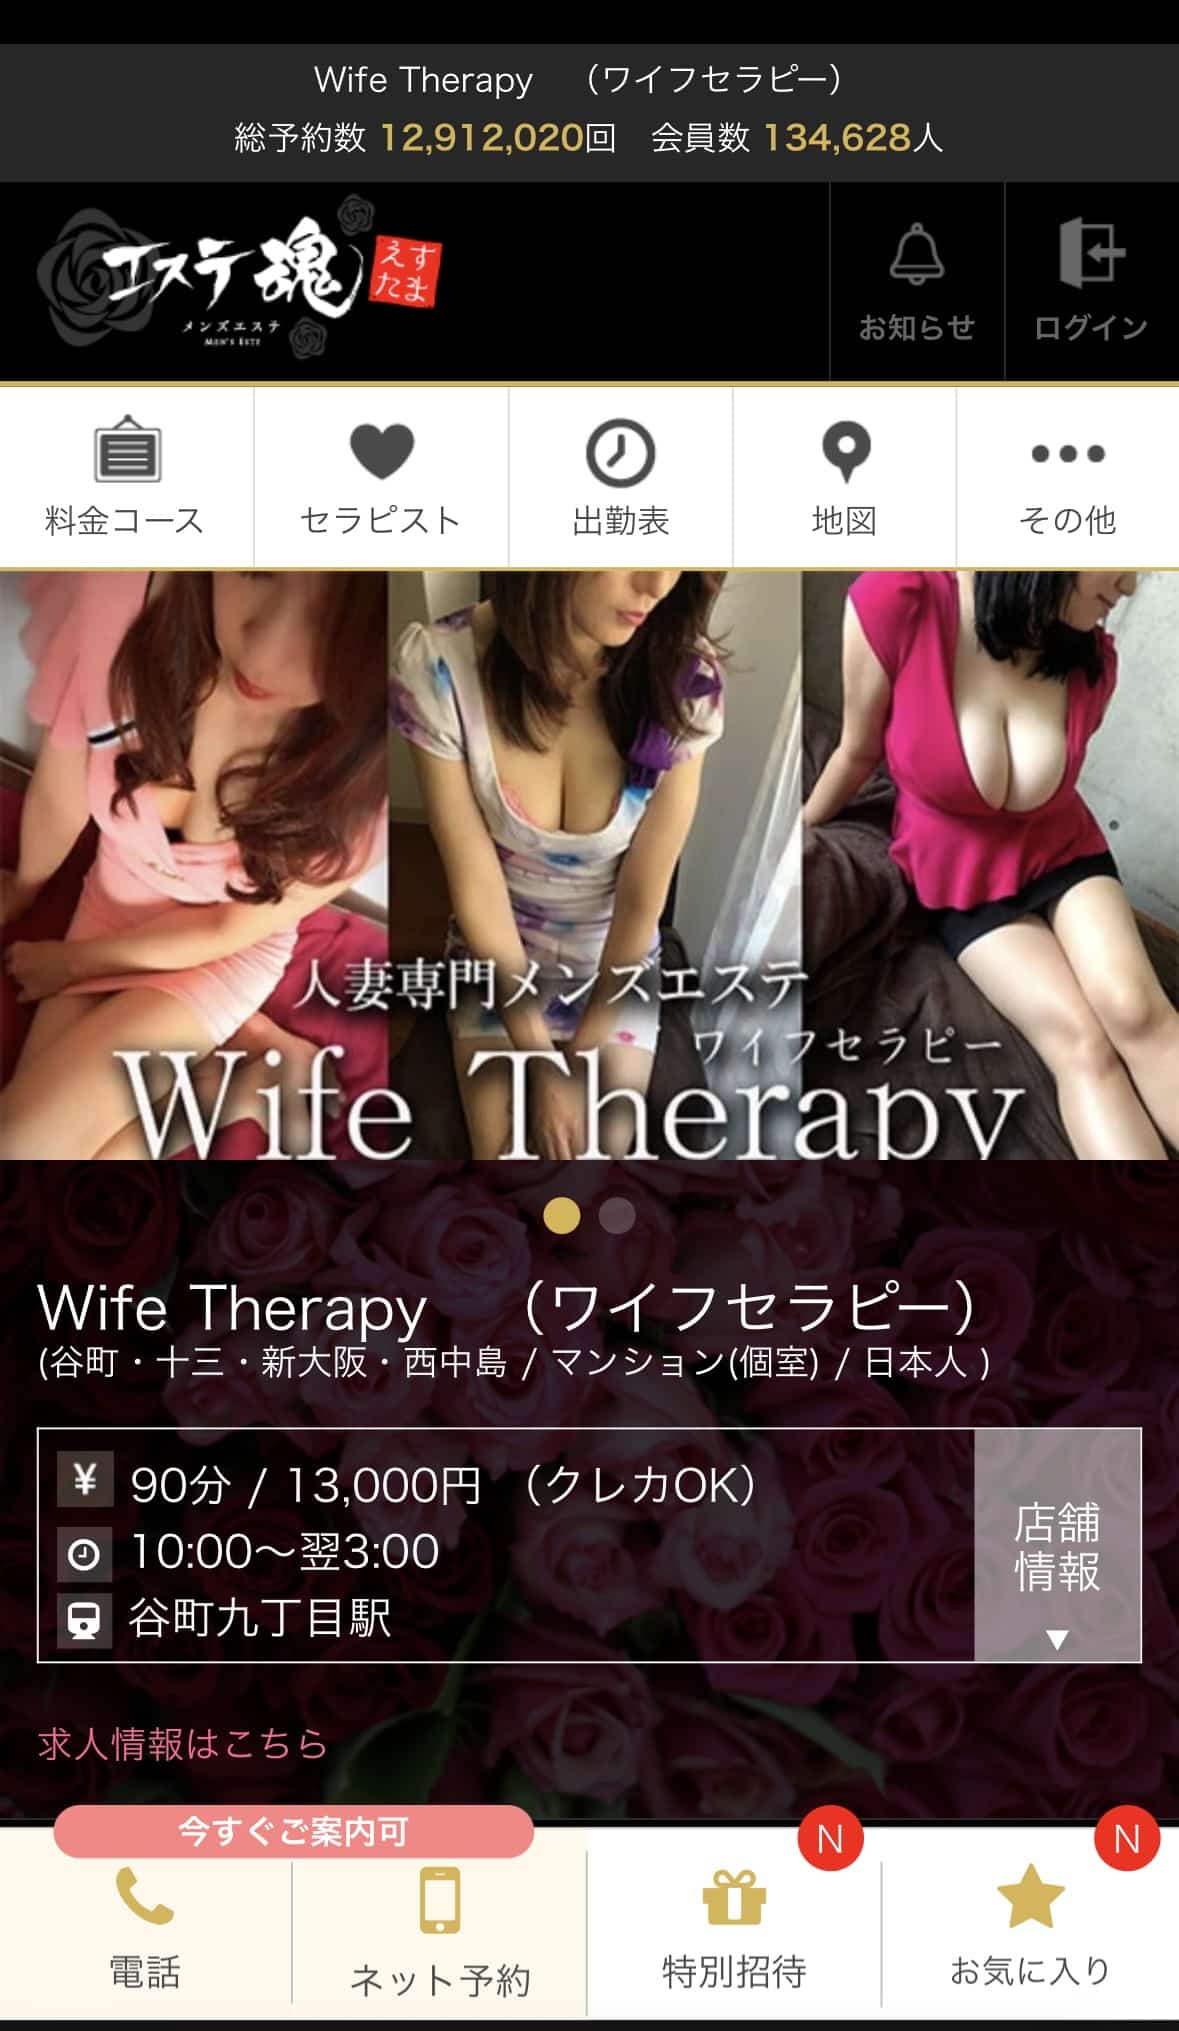 『ワイフセラピー(Wife Therapy)』体験談。